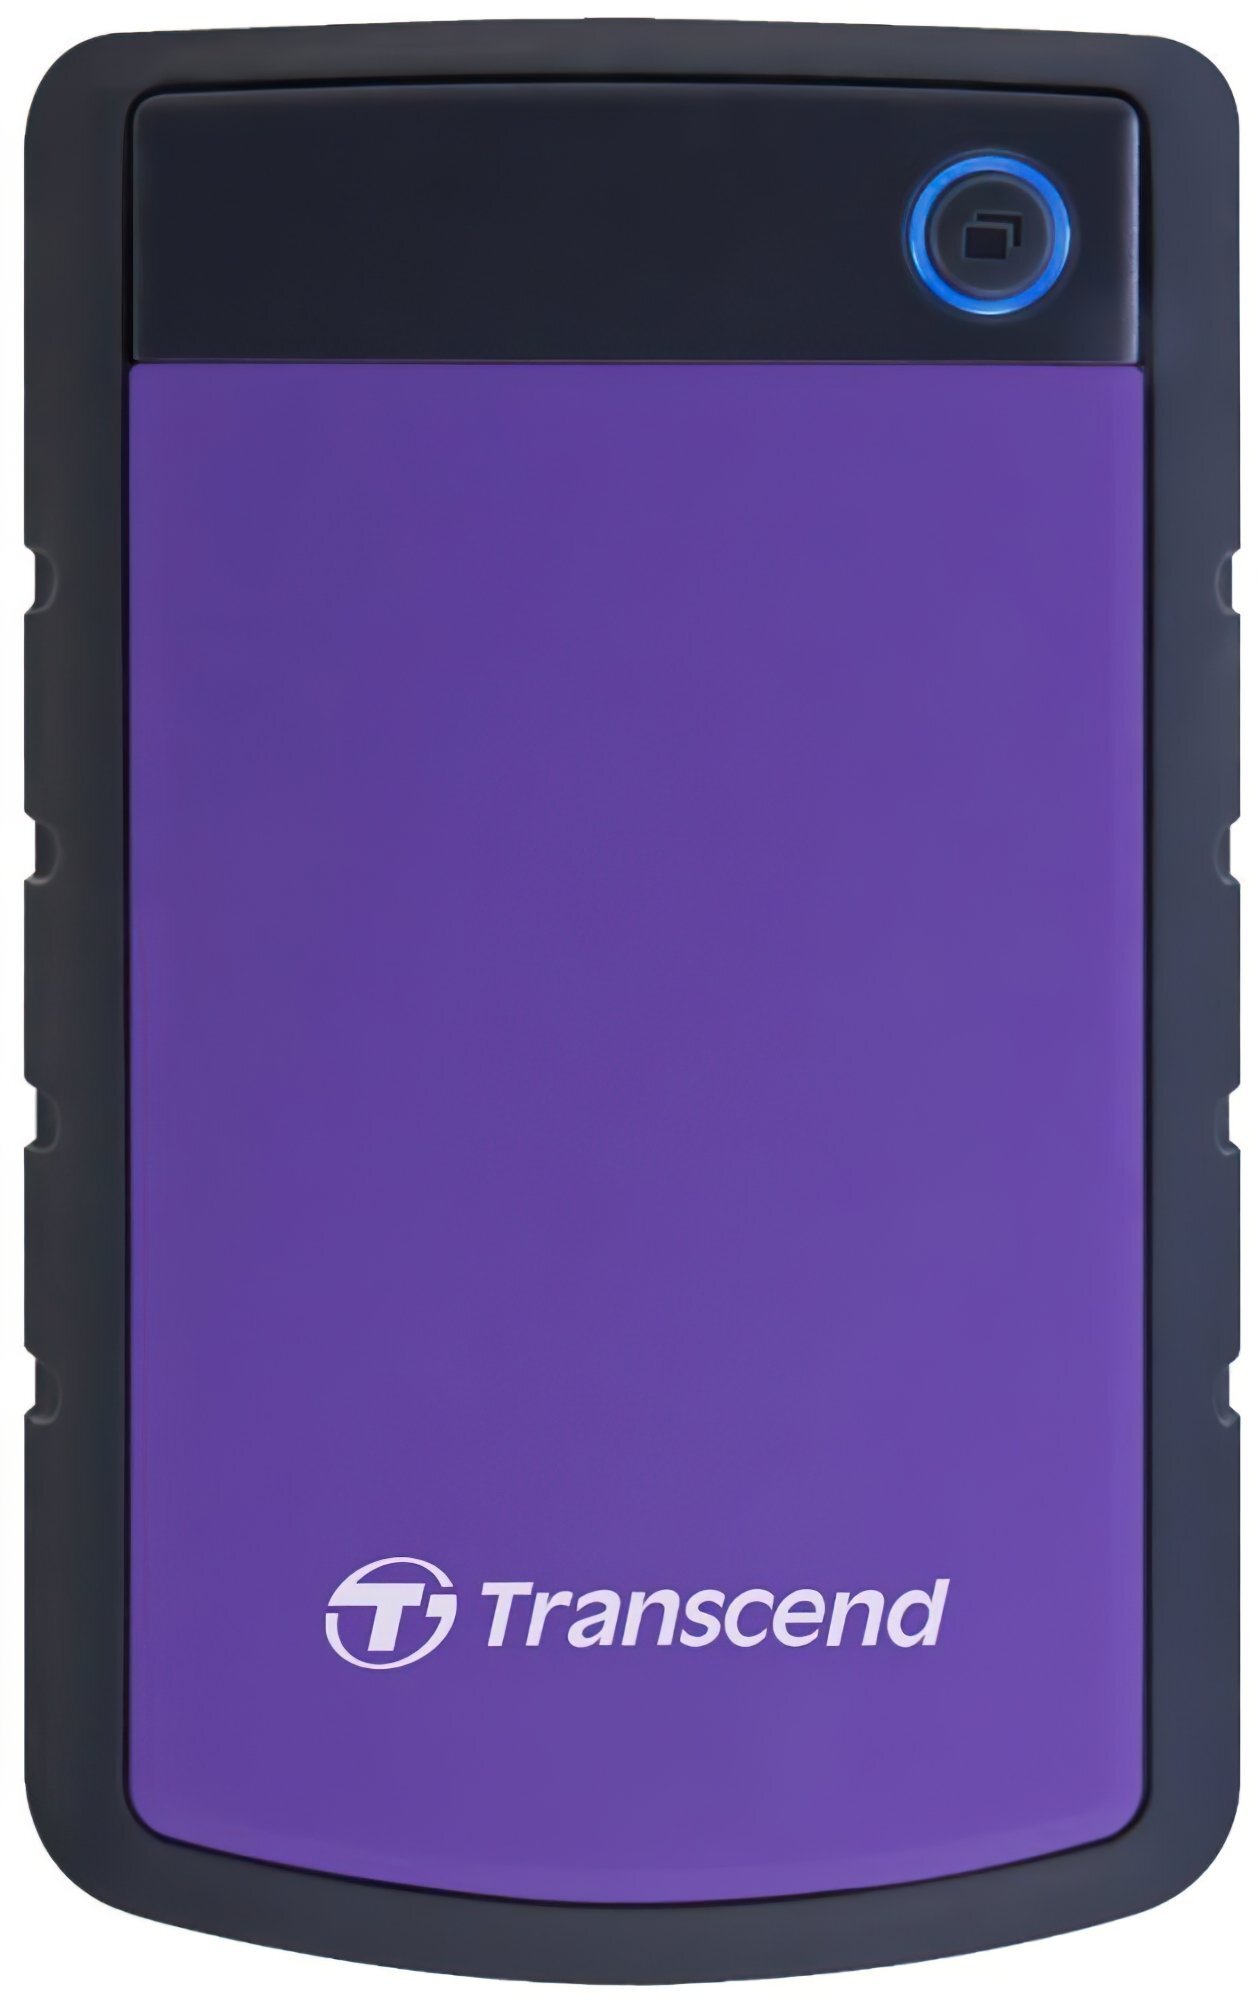 Жесткий диск TRANSCEND StoreJet 2.5" USB 3.0 4TB серия H Purple (TS4TSJ25H3P) фото 1